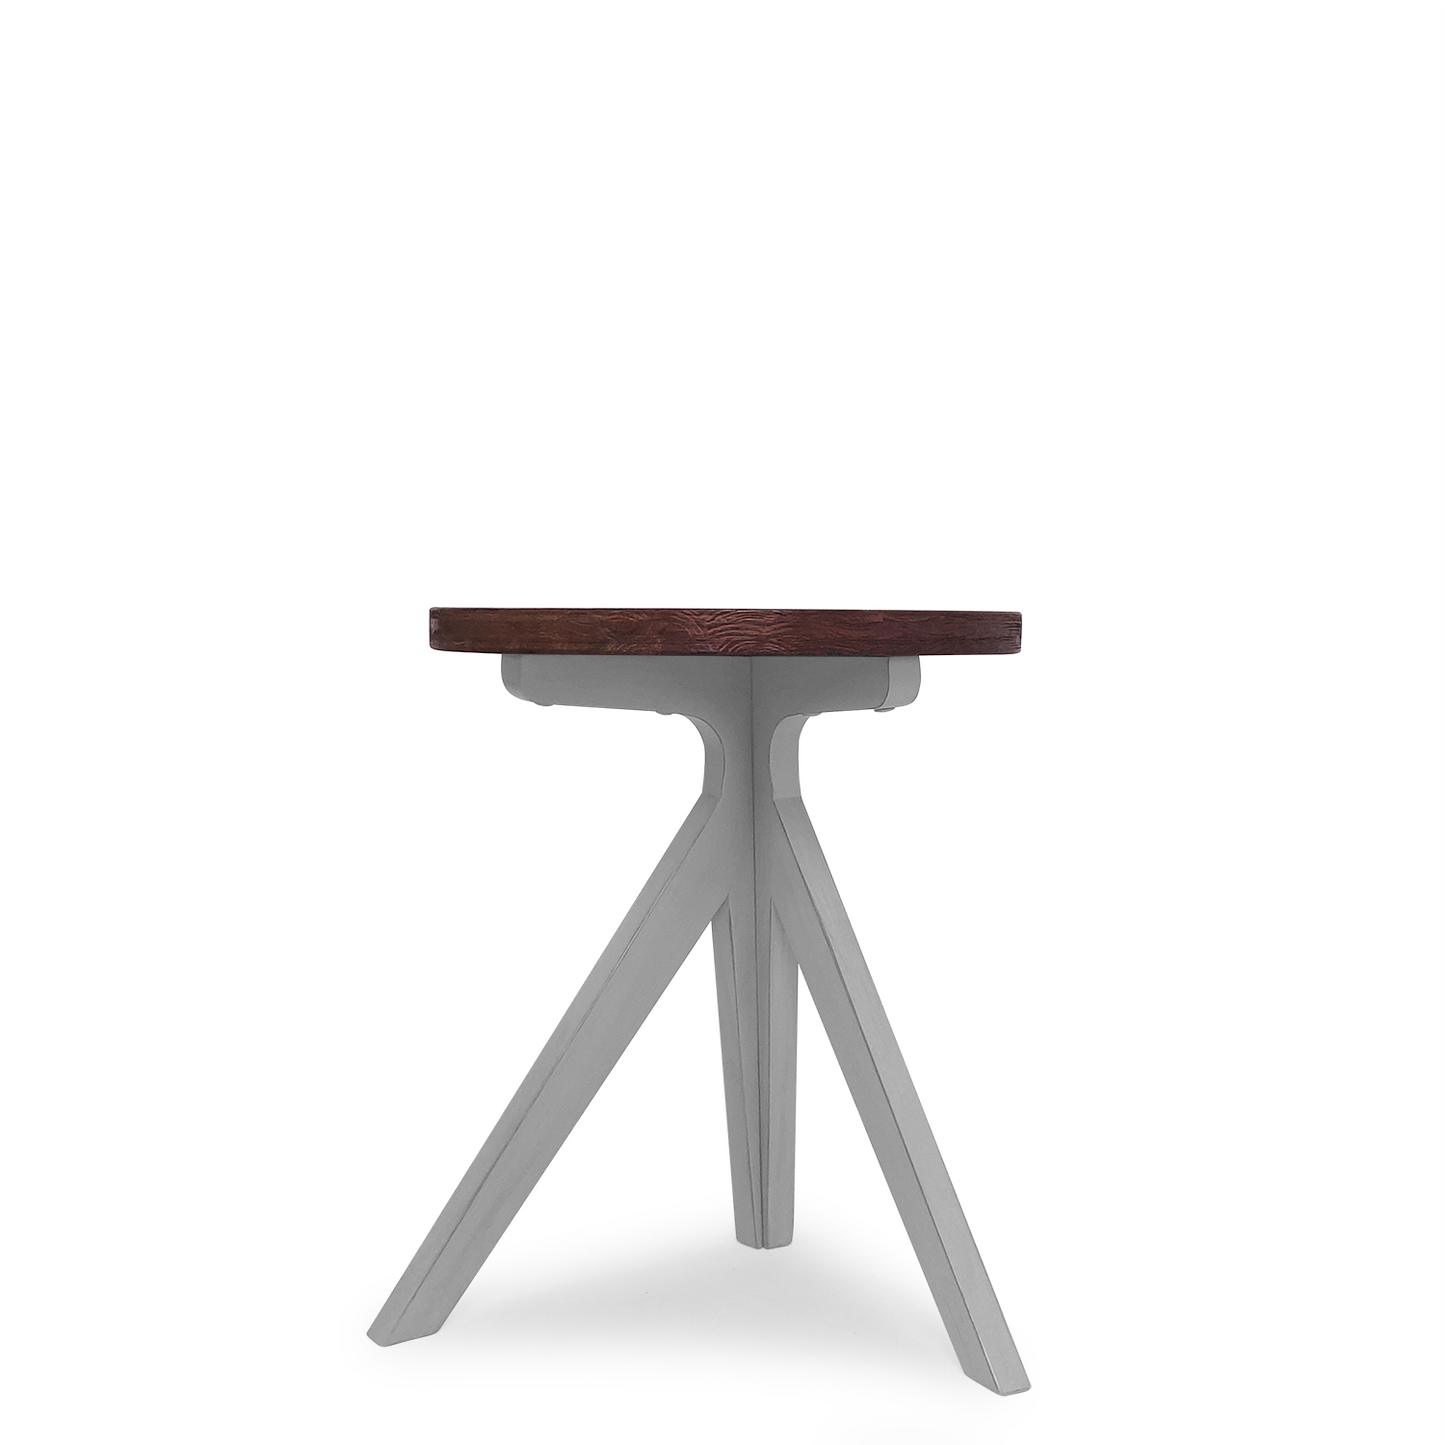 Unique Design Minimalist Vintage End Table, Brown, 20"x20"x23.6"